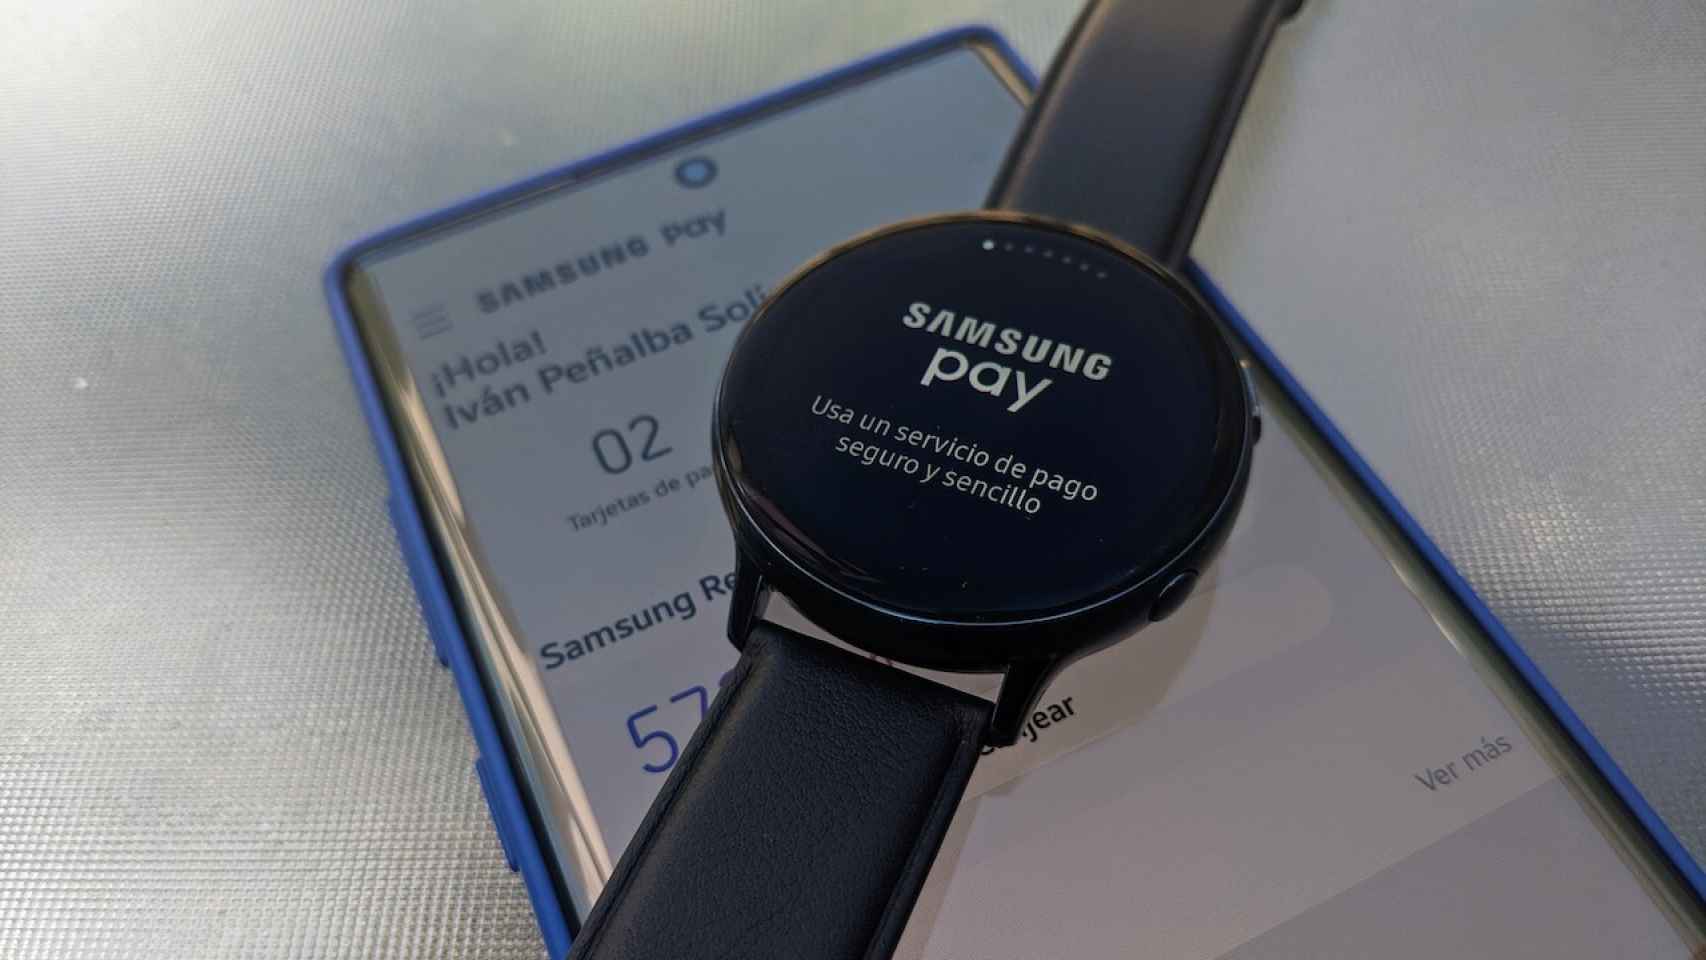 Samsung Pay el reloj: cómo usarlo, relojes compatibles, recompensas...